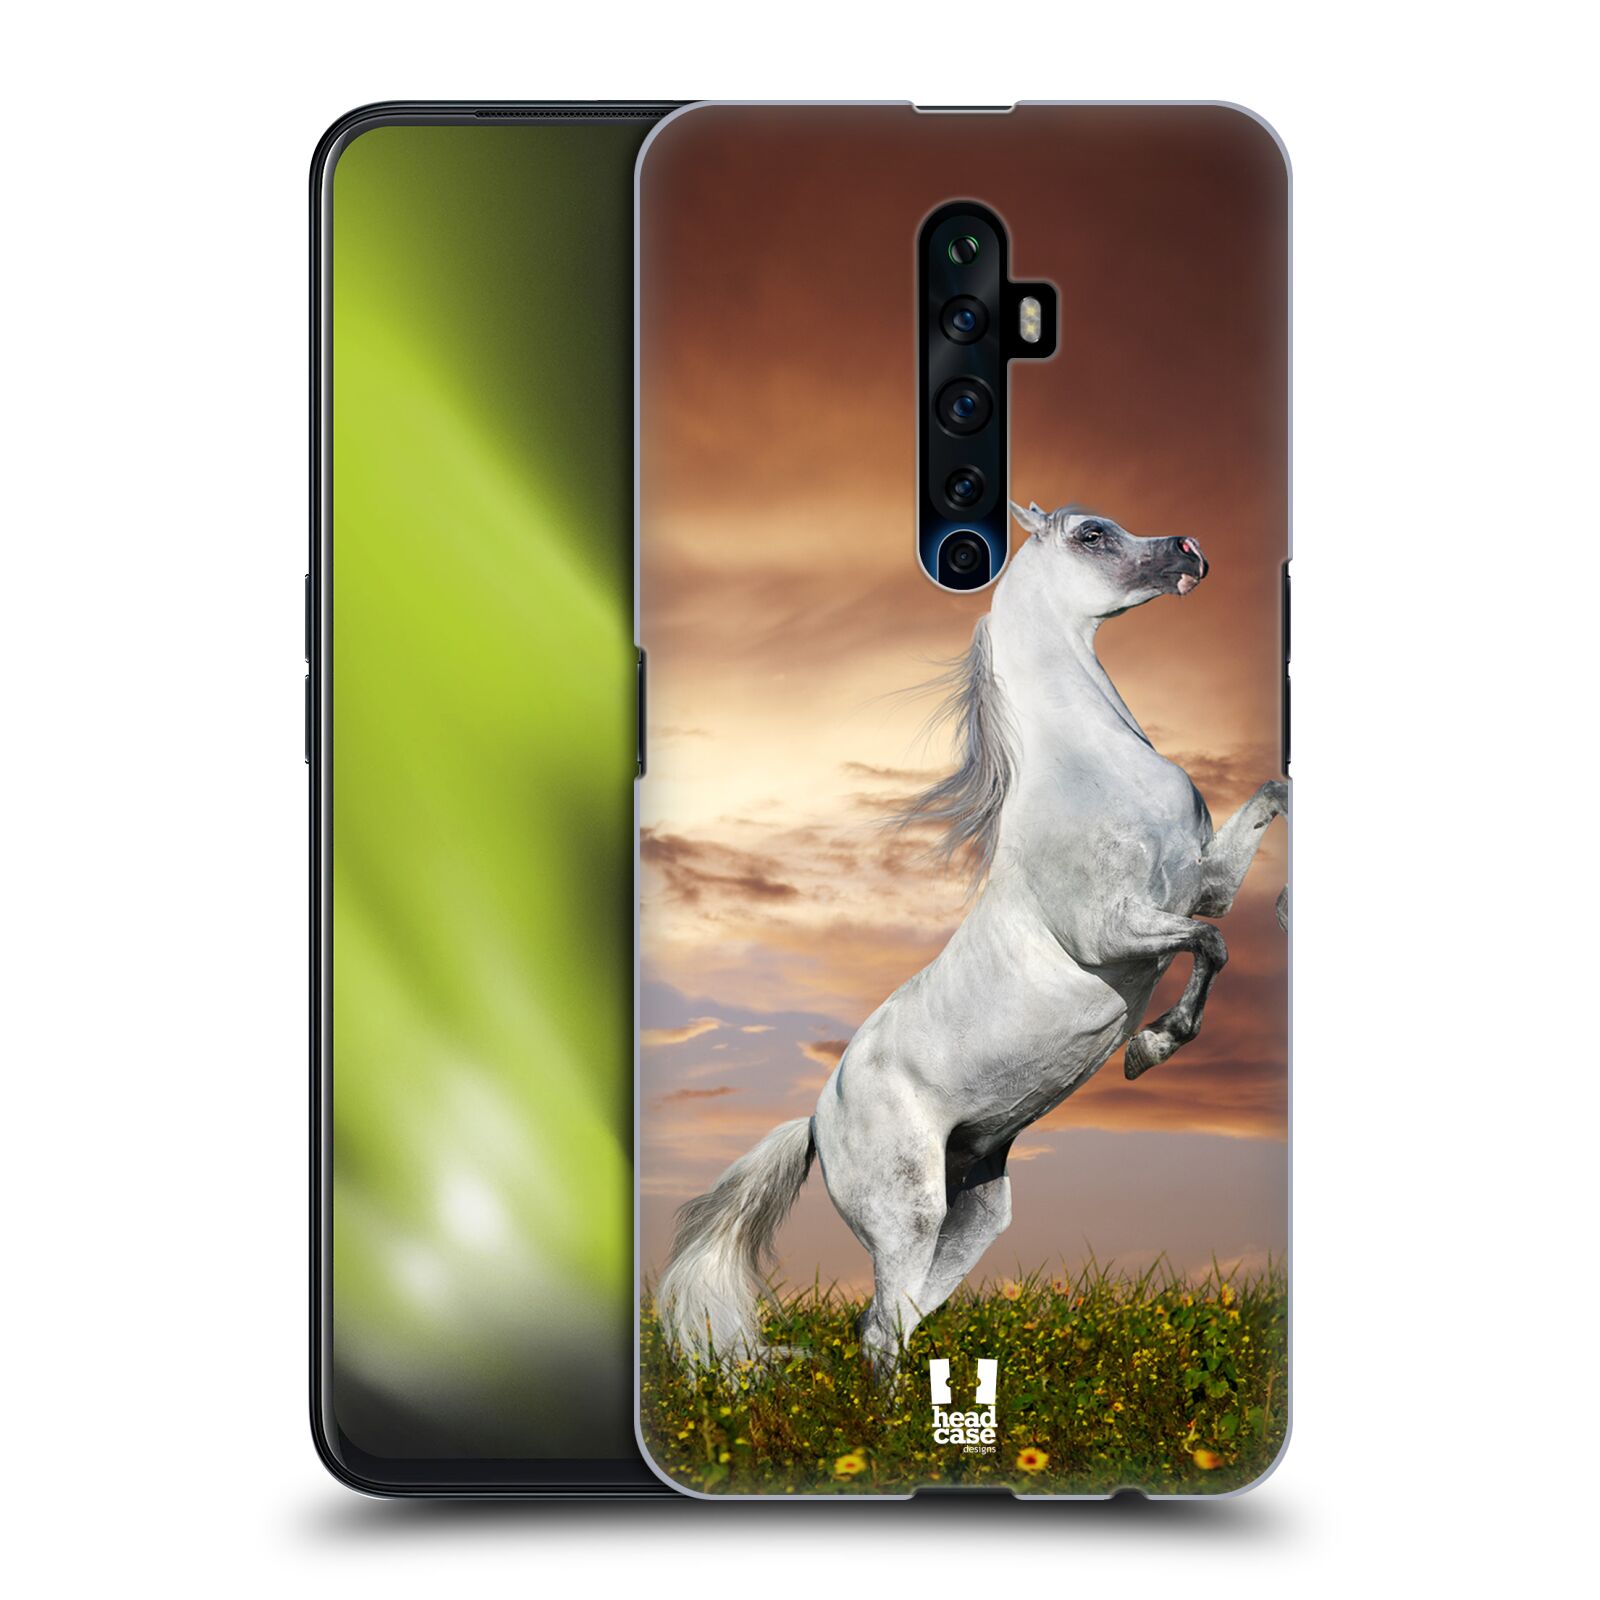 Zadní obal pro mobil Oppo Reno 2Z - HEAD CASE - Svět zvířat divoký kůň